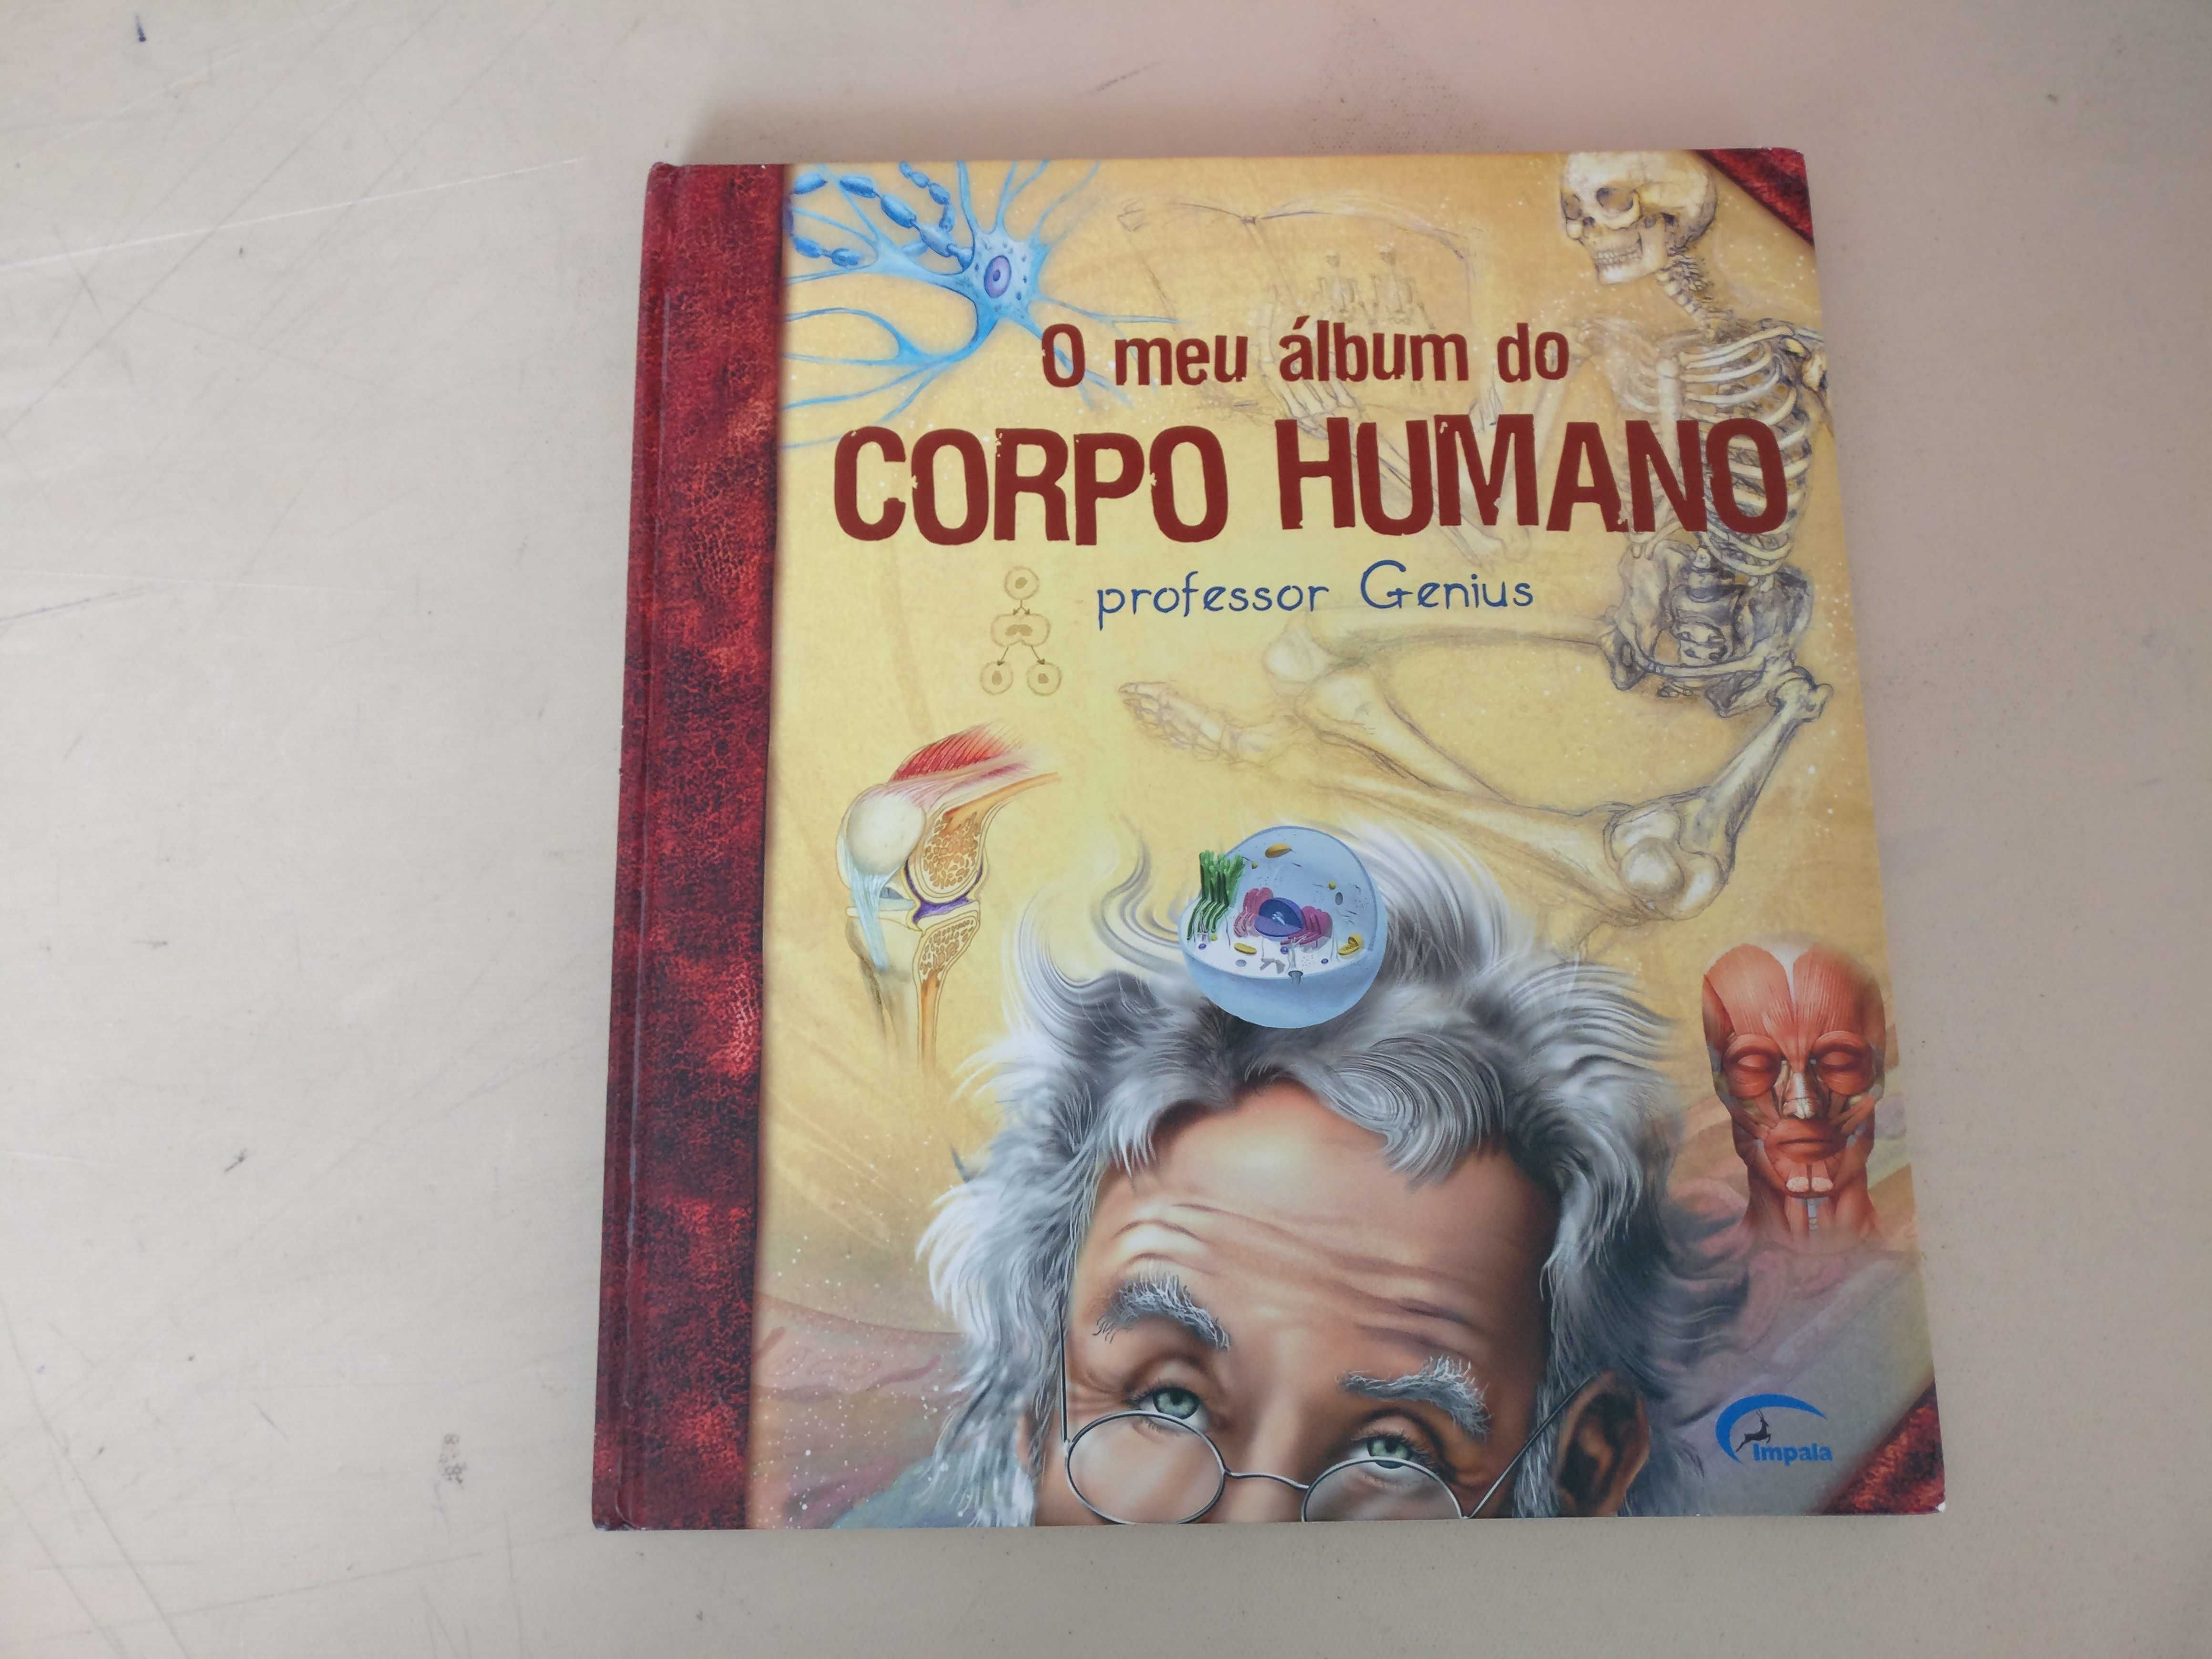 O meu álbum do Corpo Humano - professor Genius